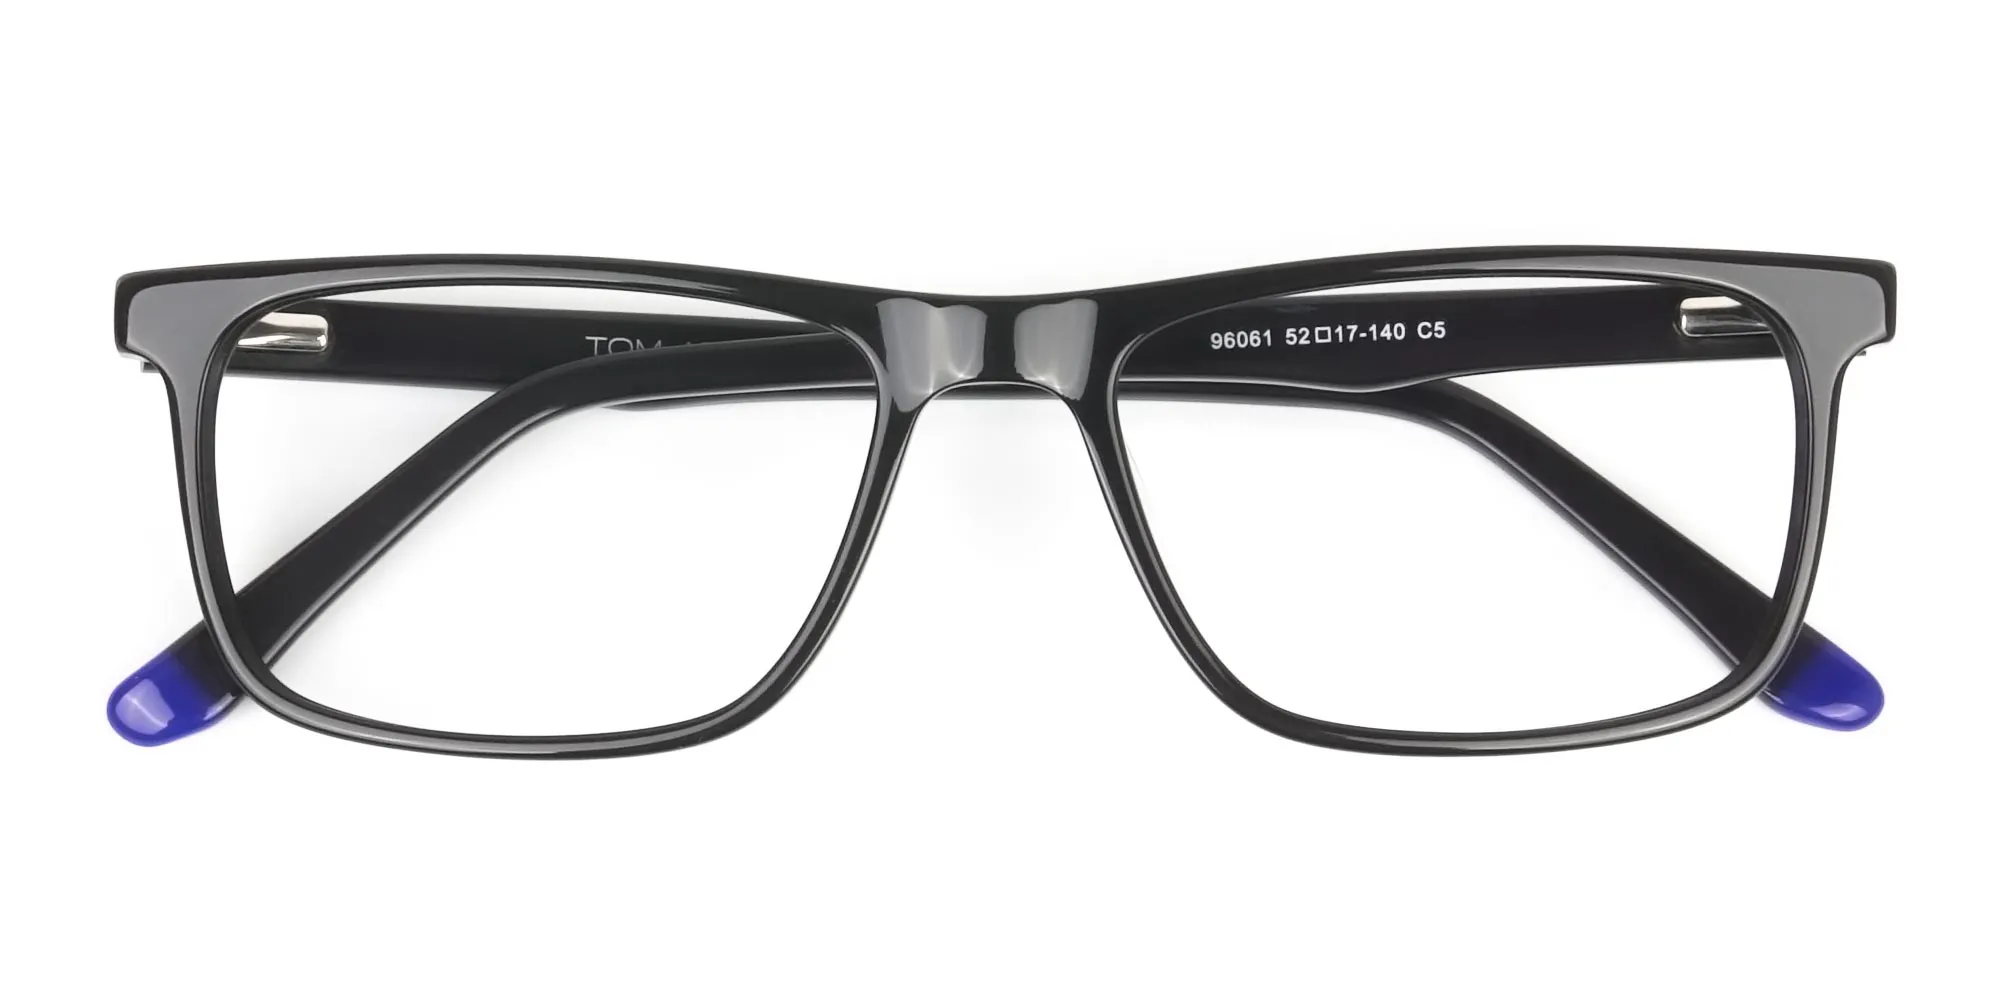 Black & Blue Temple Tips Glasses in Rectangular - 2